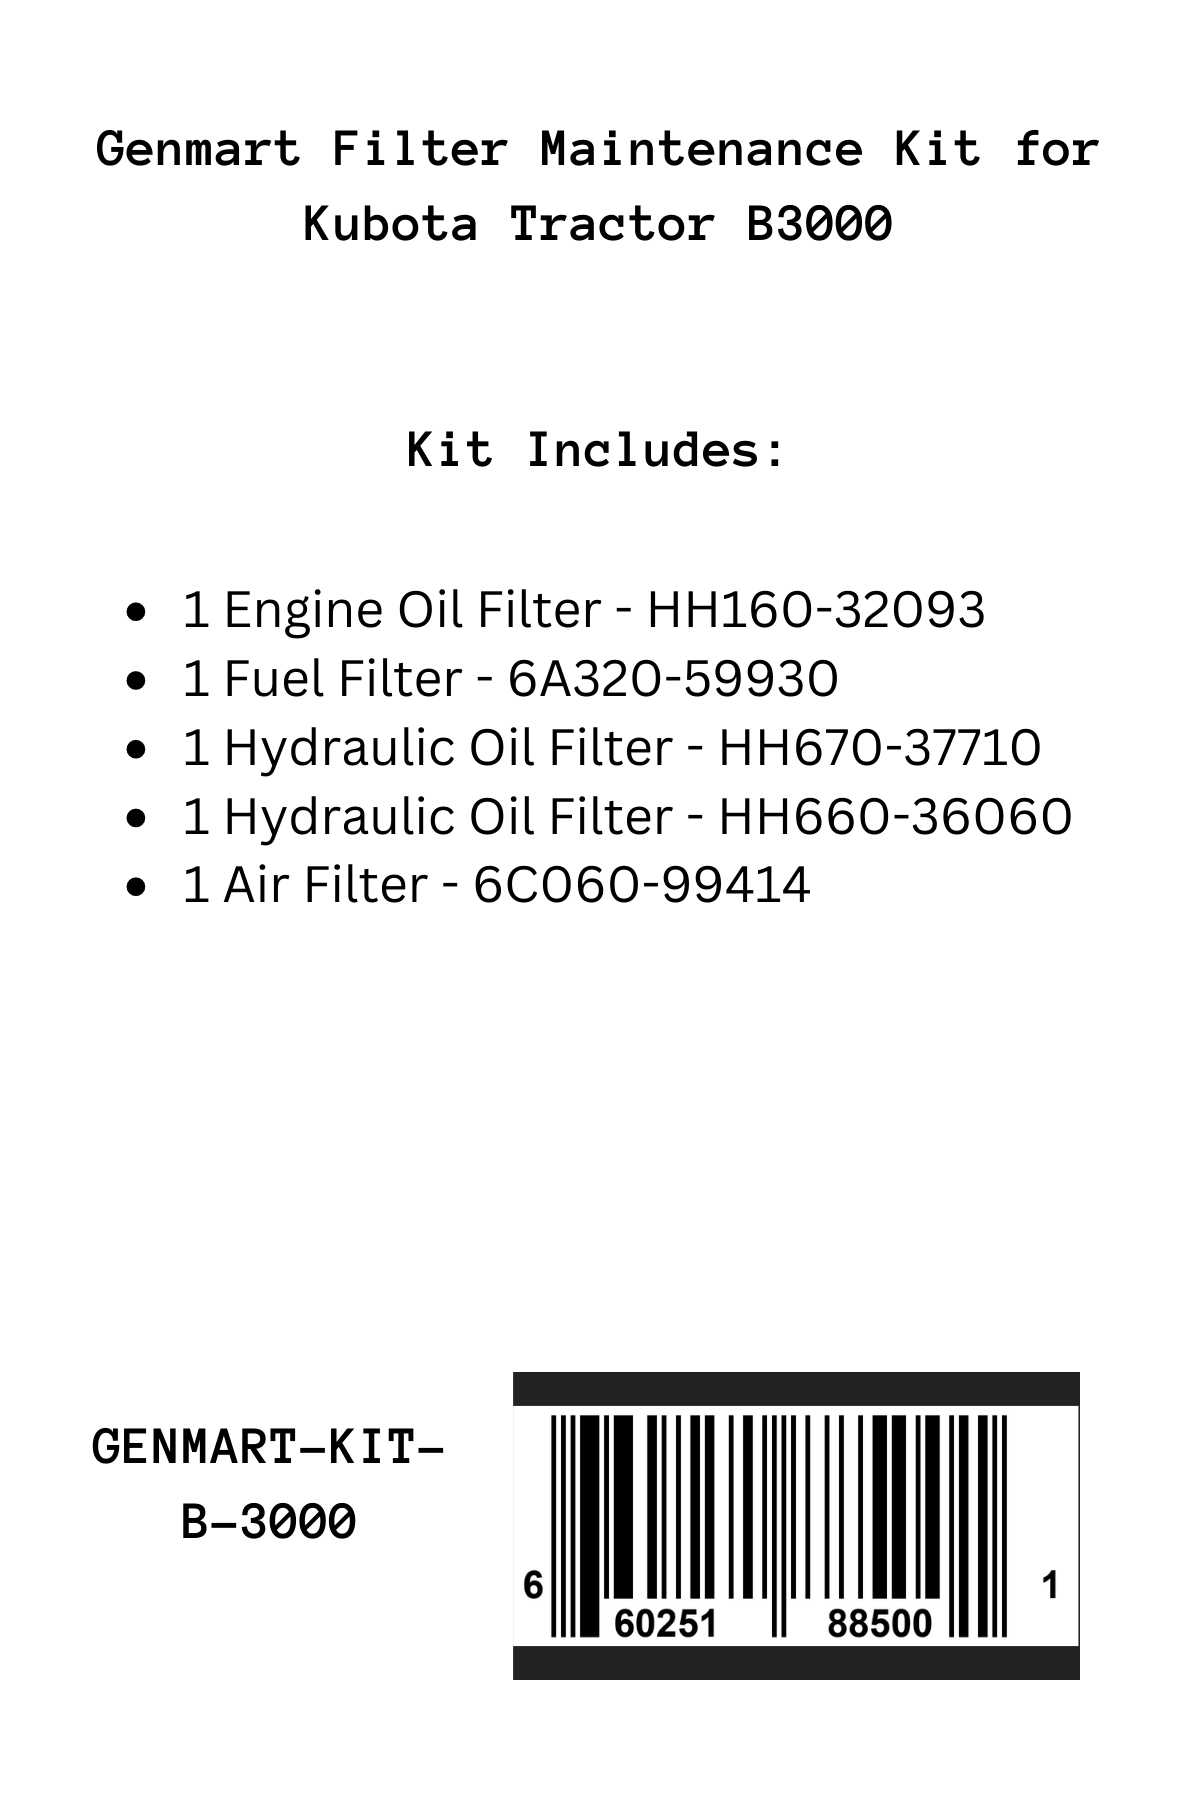 Genmart Maintenance Kit for Kubota Tractor B3000